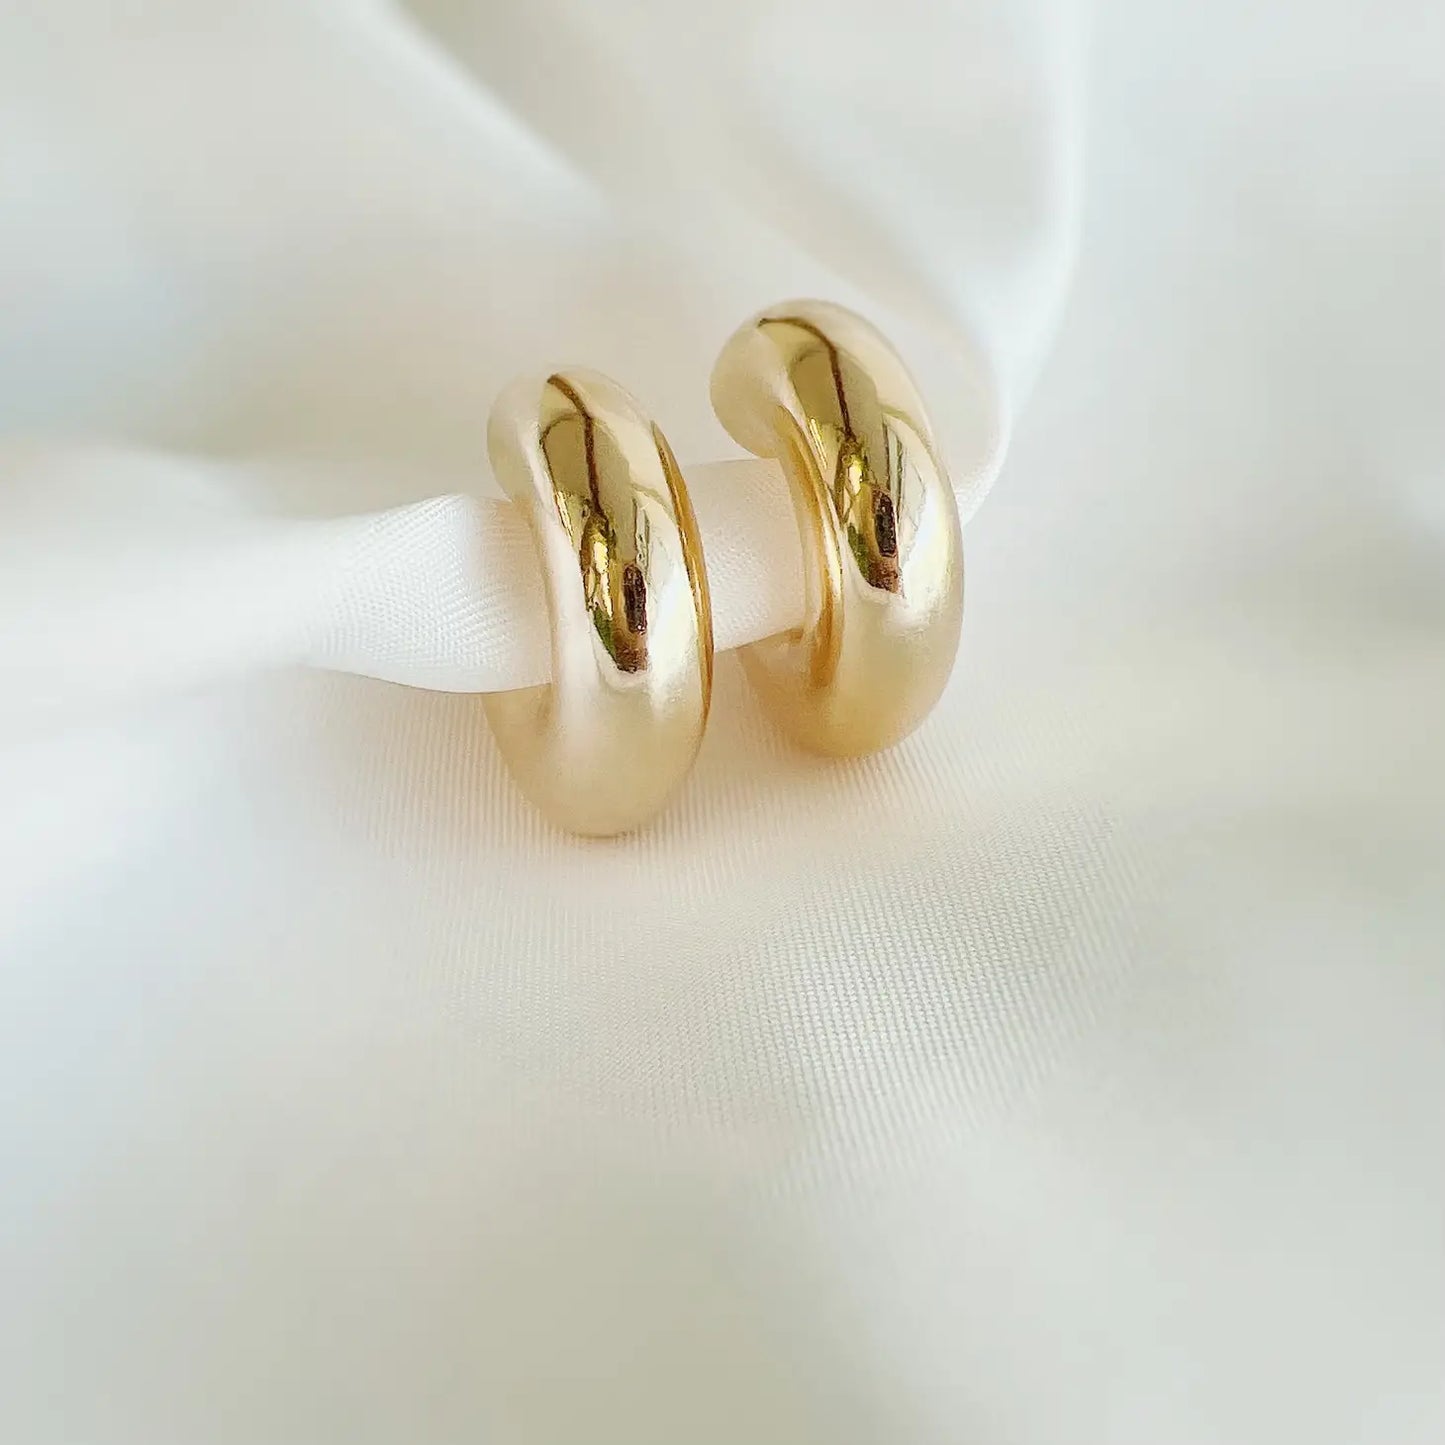 Ellie Chunky Tube Hoops Earrings Gold Filled - True by Kristy Jewelry